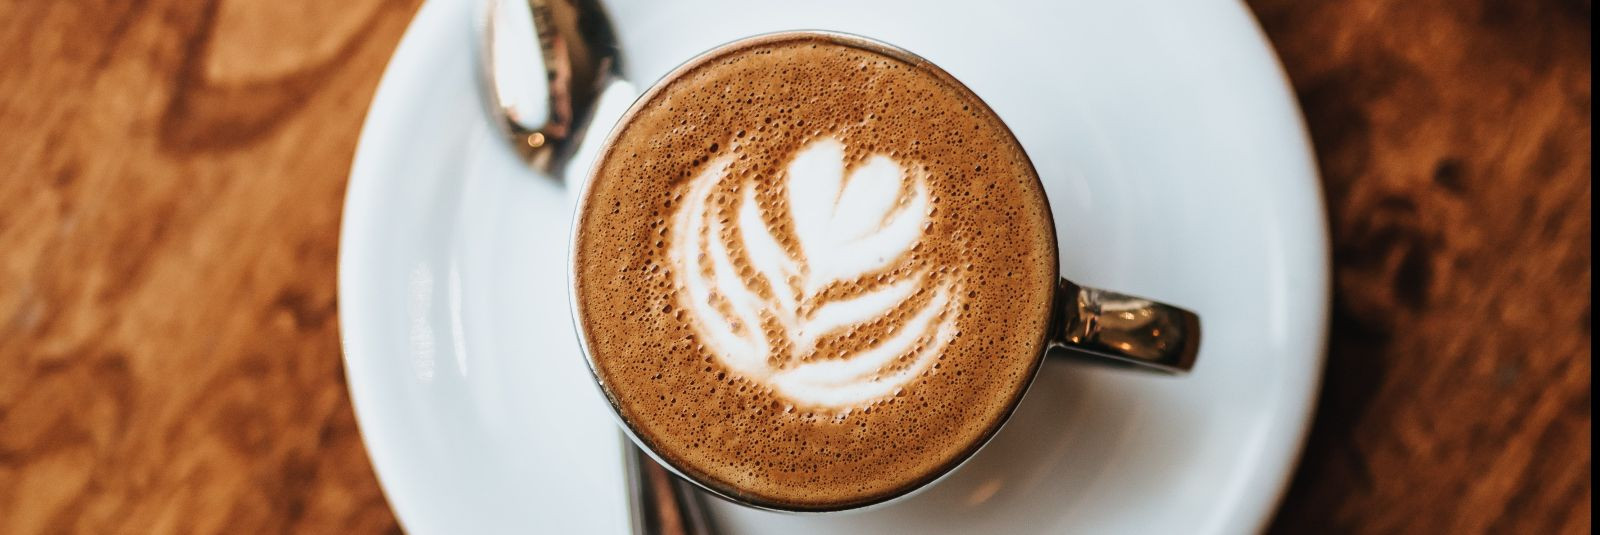 Kohv on osa paljude inimeste igapäevaelust ning hea kohv võib olla ka tööpäeva alguseks vajalik motivaator. Kvaliteetse kohvi pakkumine kontoris võib tõsta töök